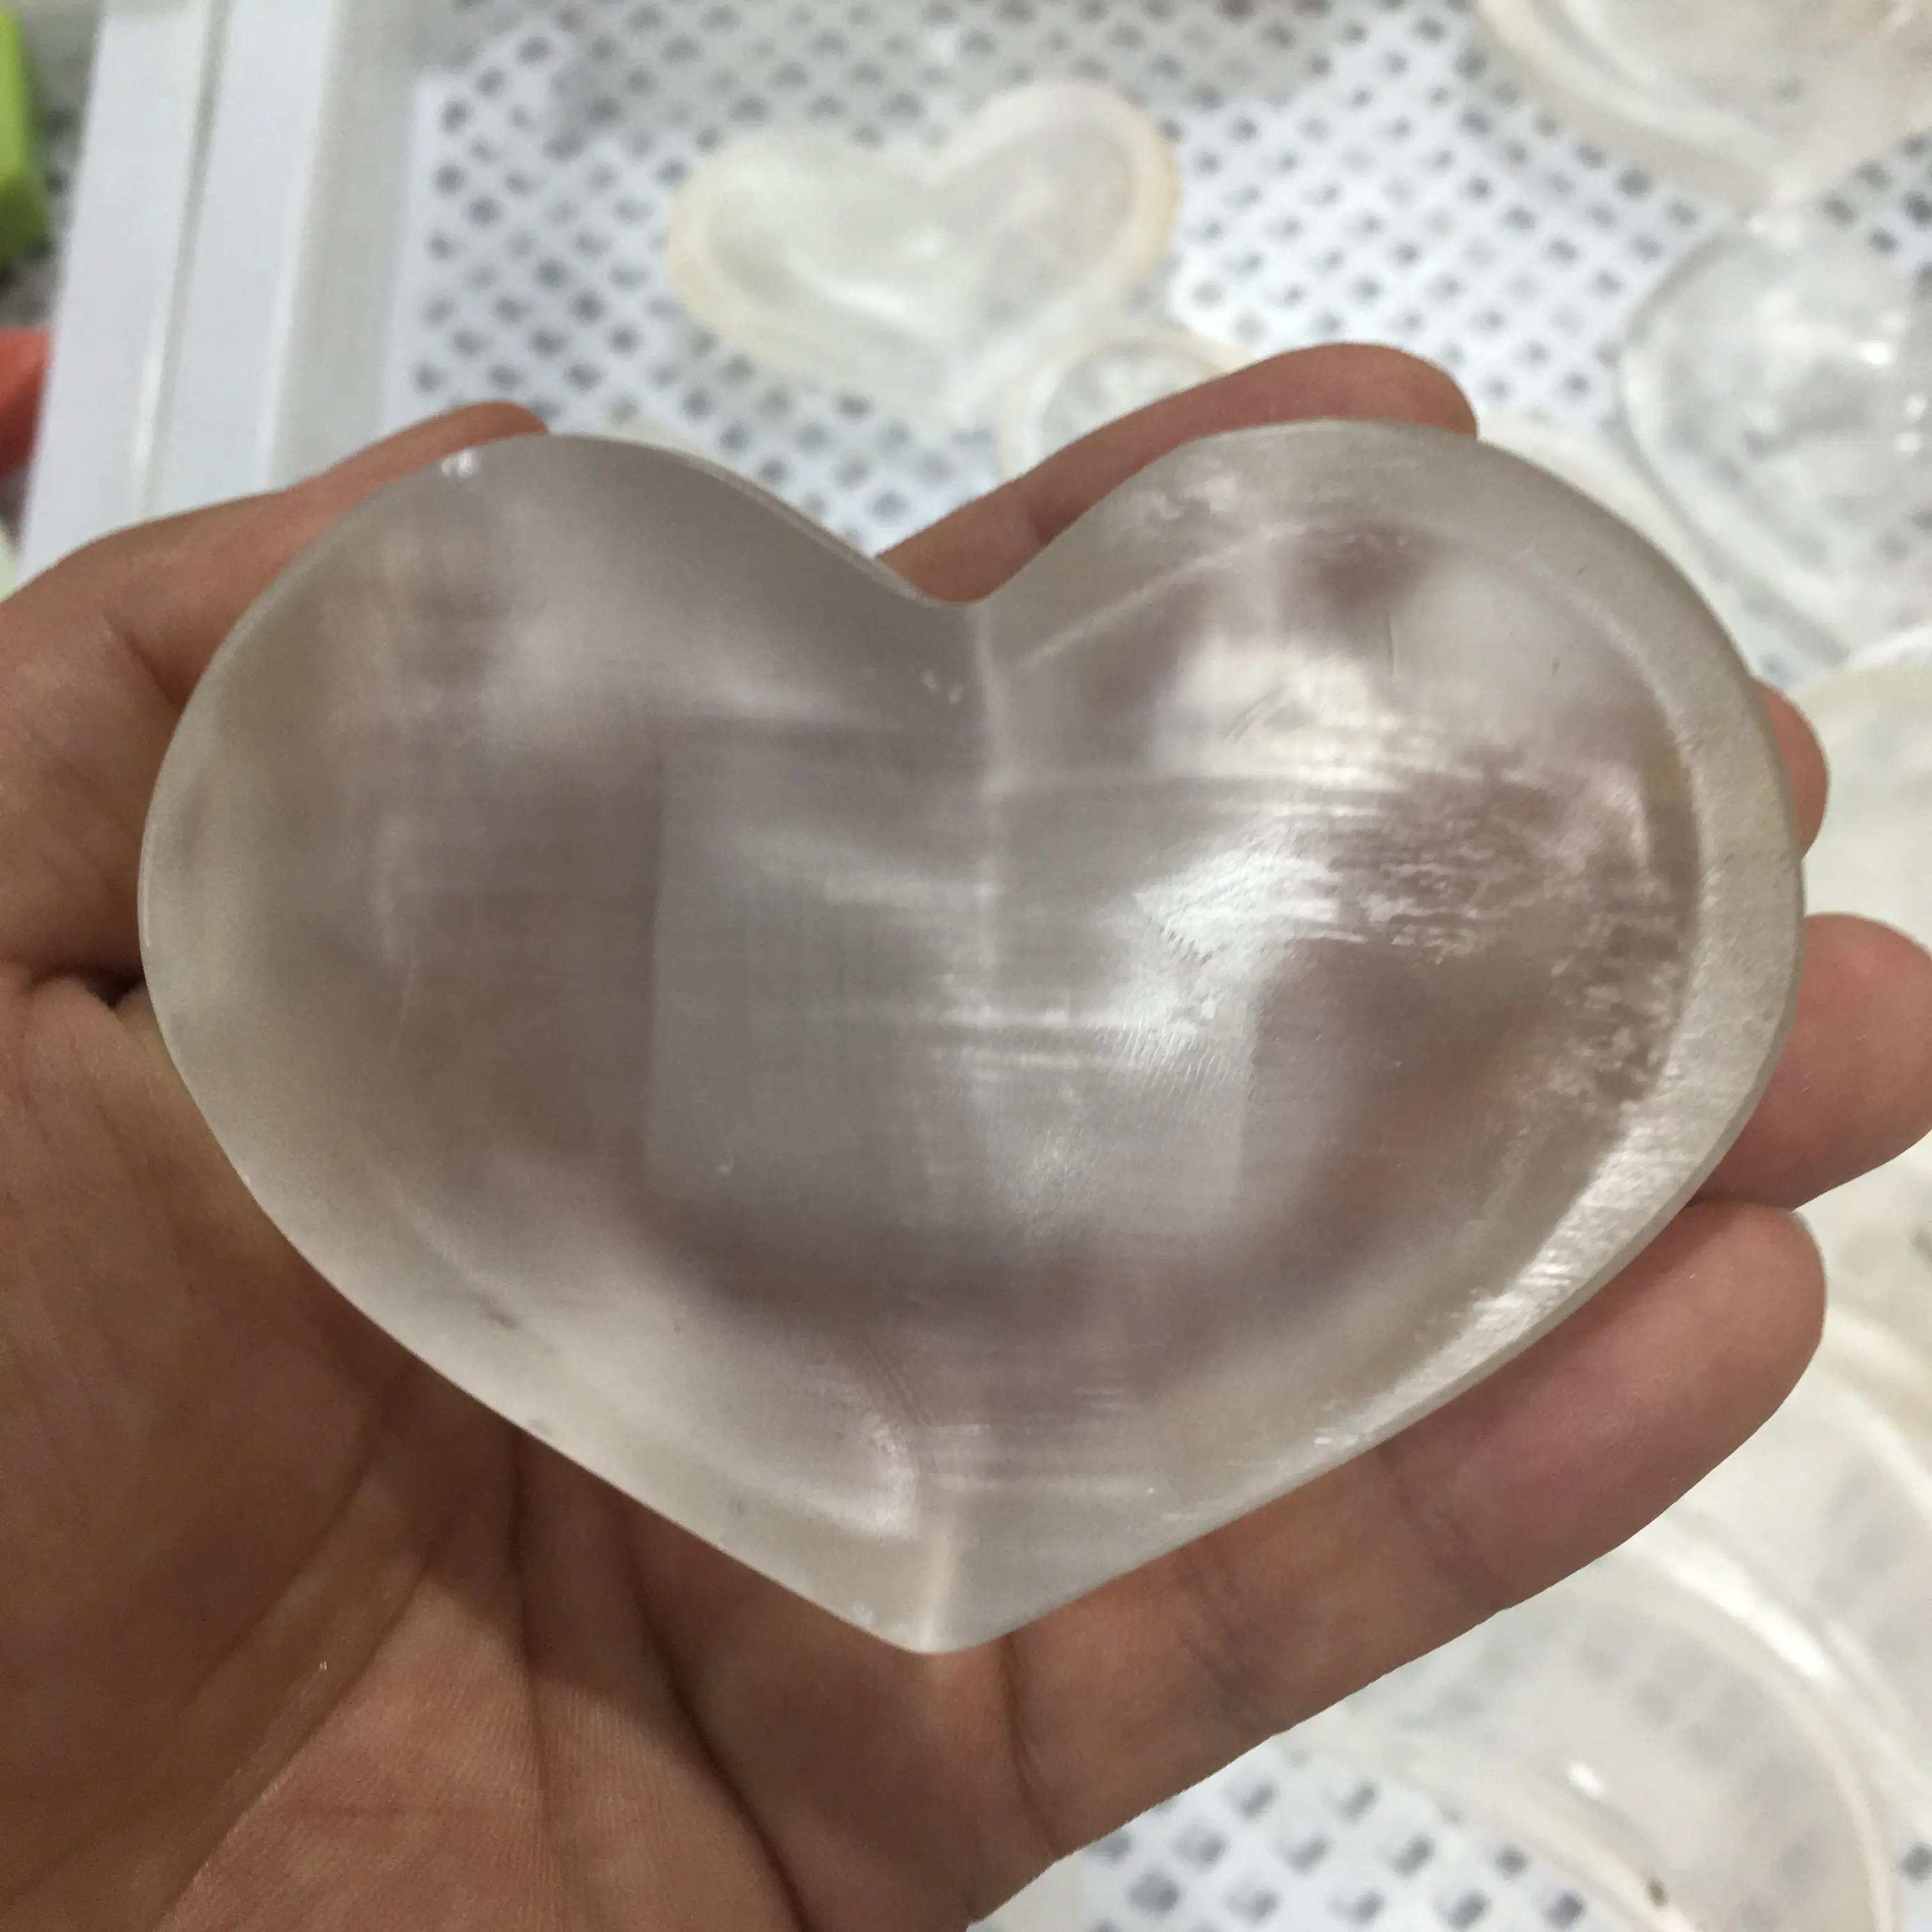 Caliente nuevos productos blancos artesanía de cristal Cenicero selenita corazón tazón para la decoración de la casa